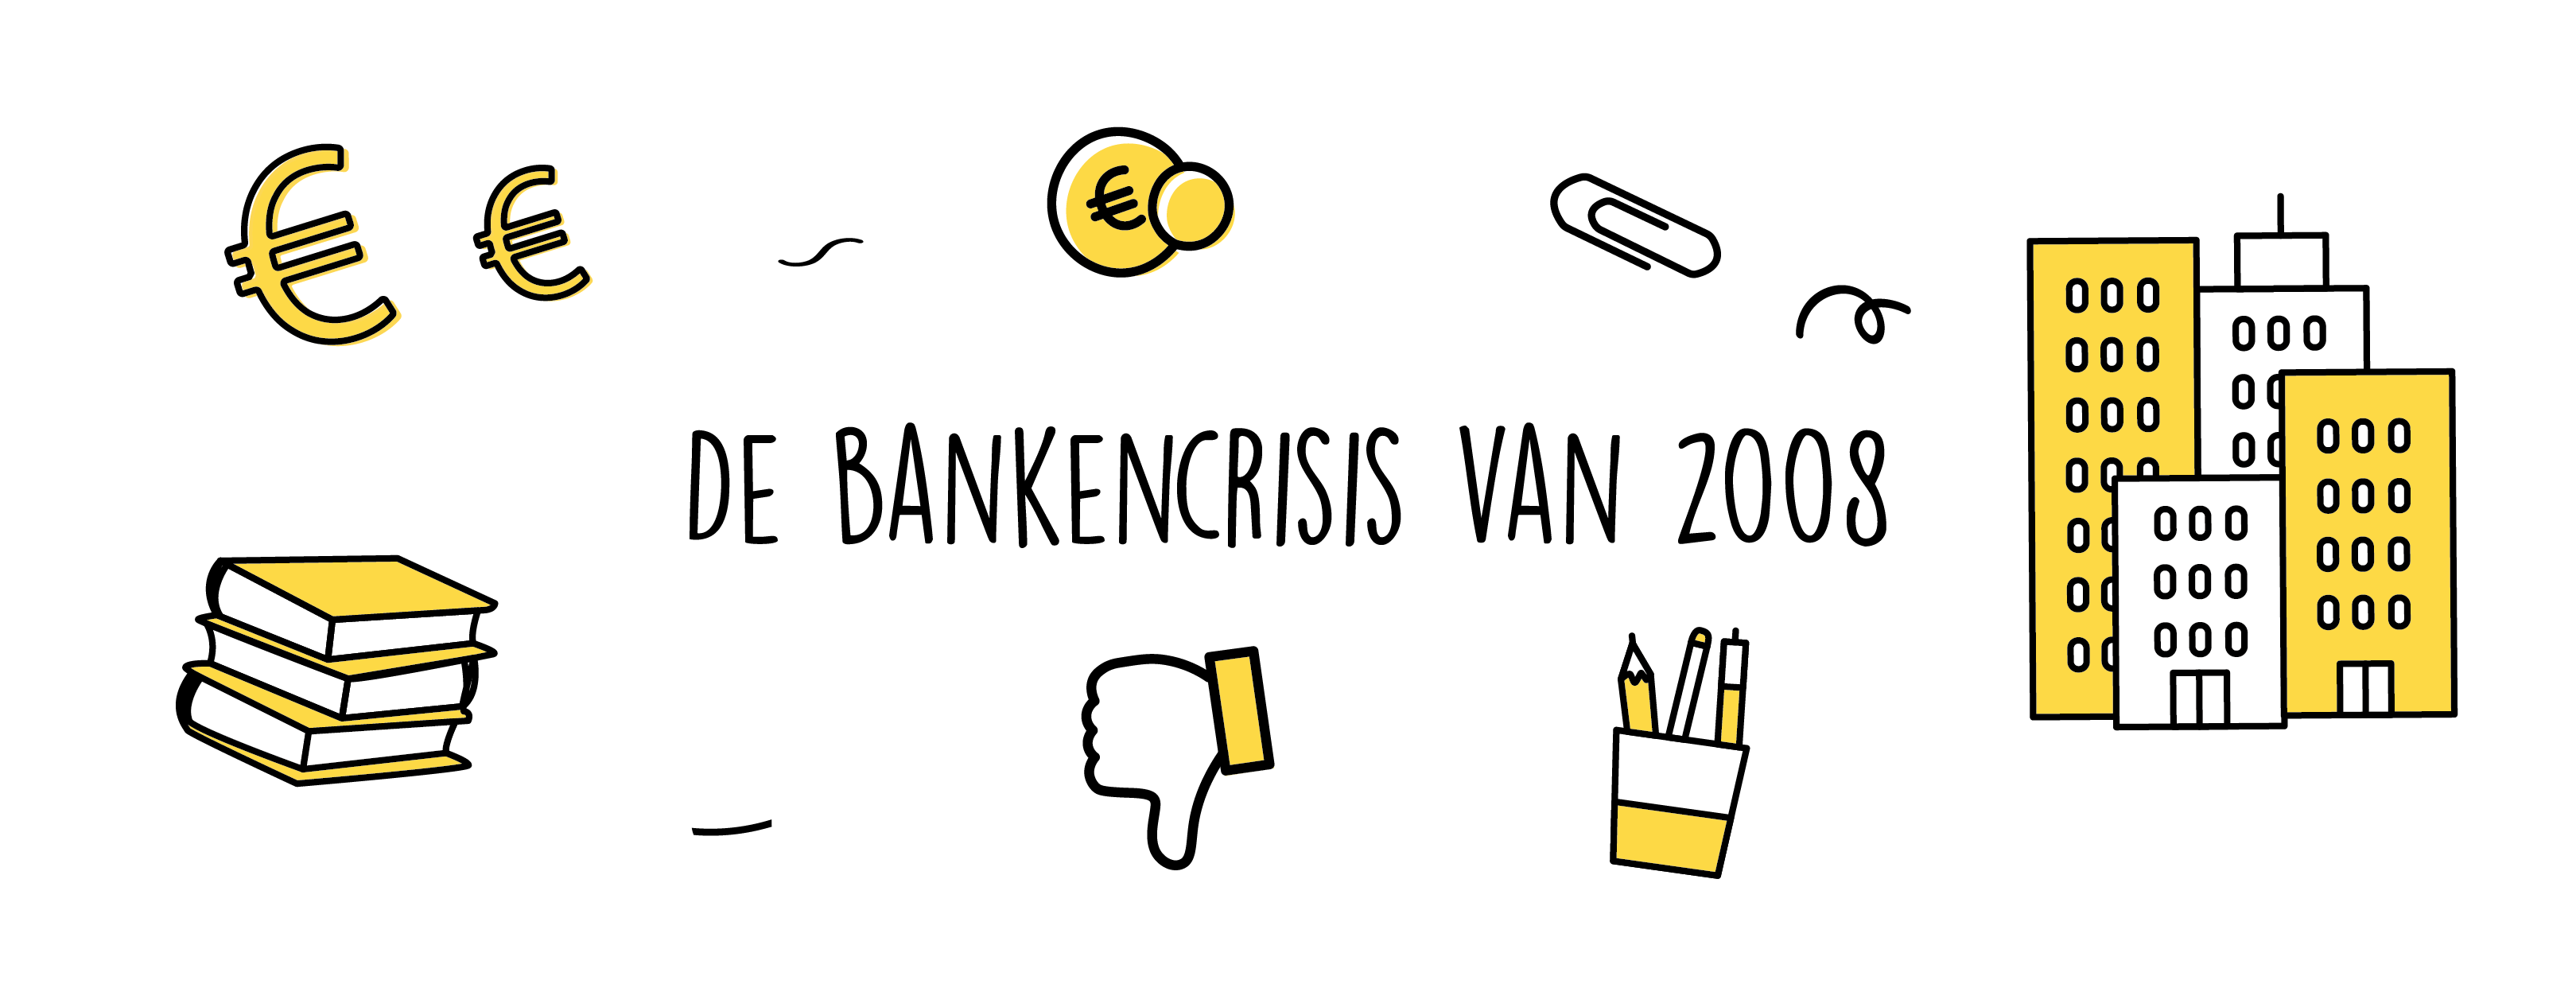 bankencrisis